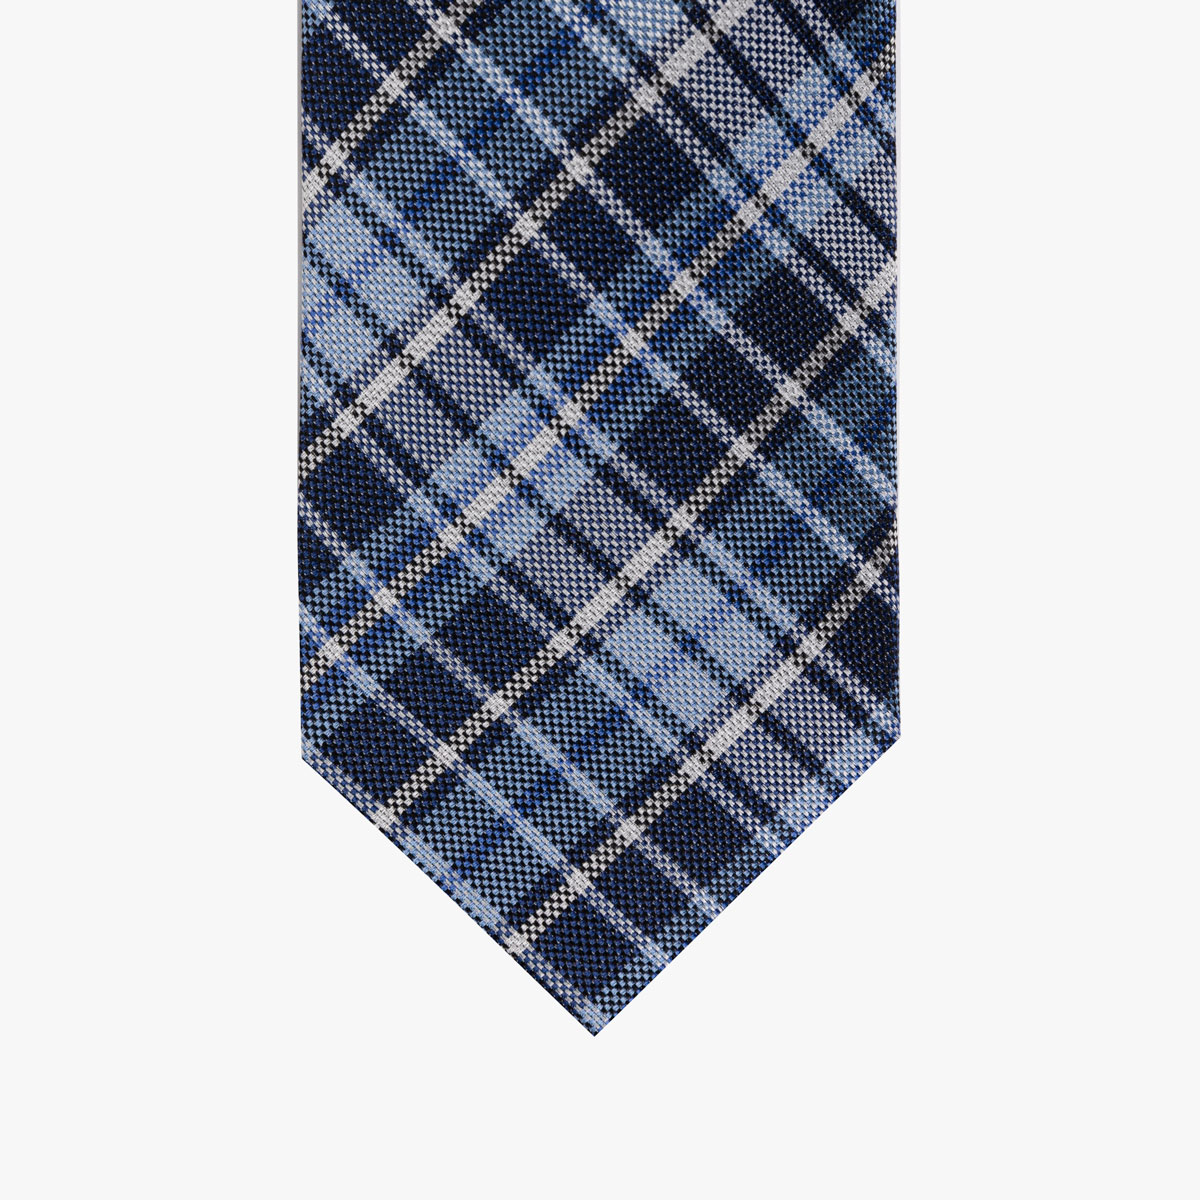 Krawatte mit Karo Muster in blau 